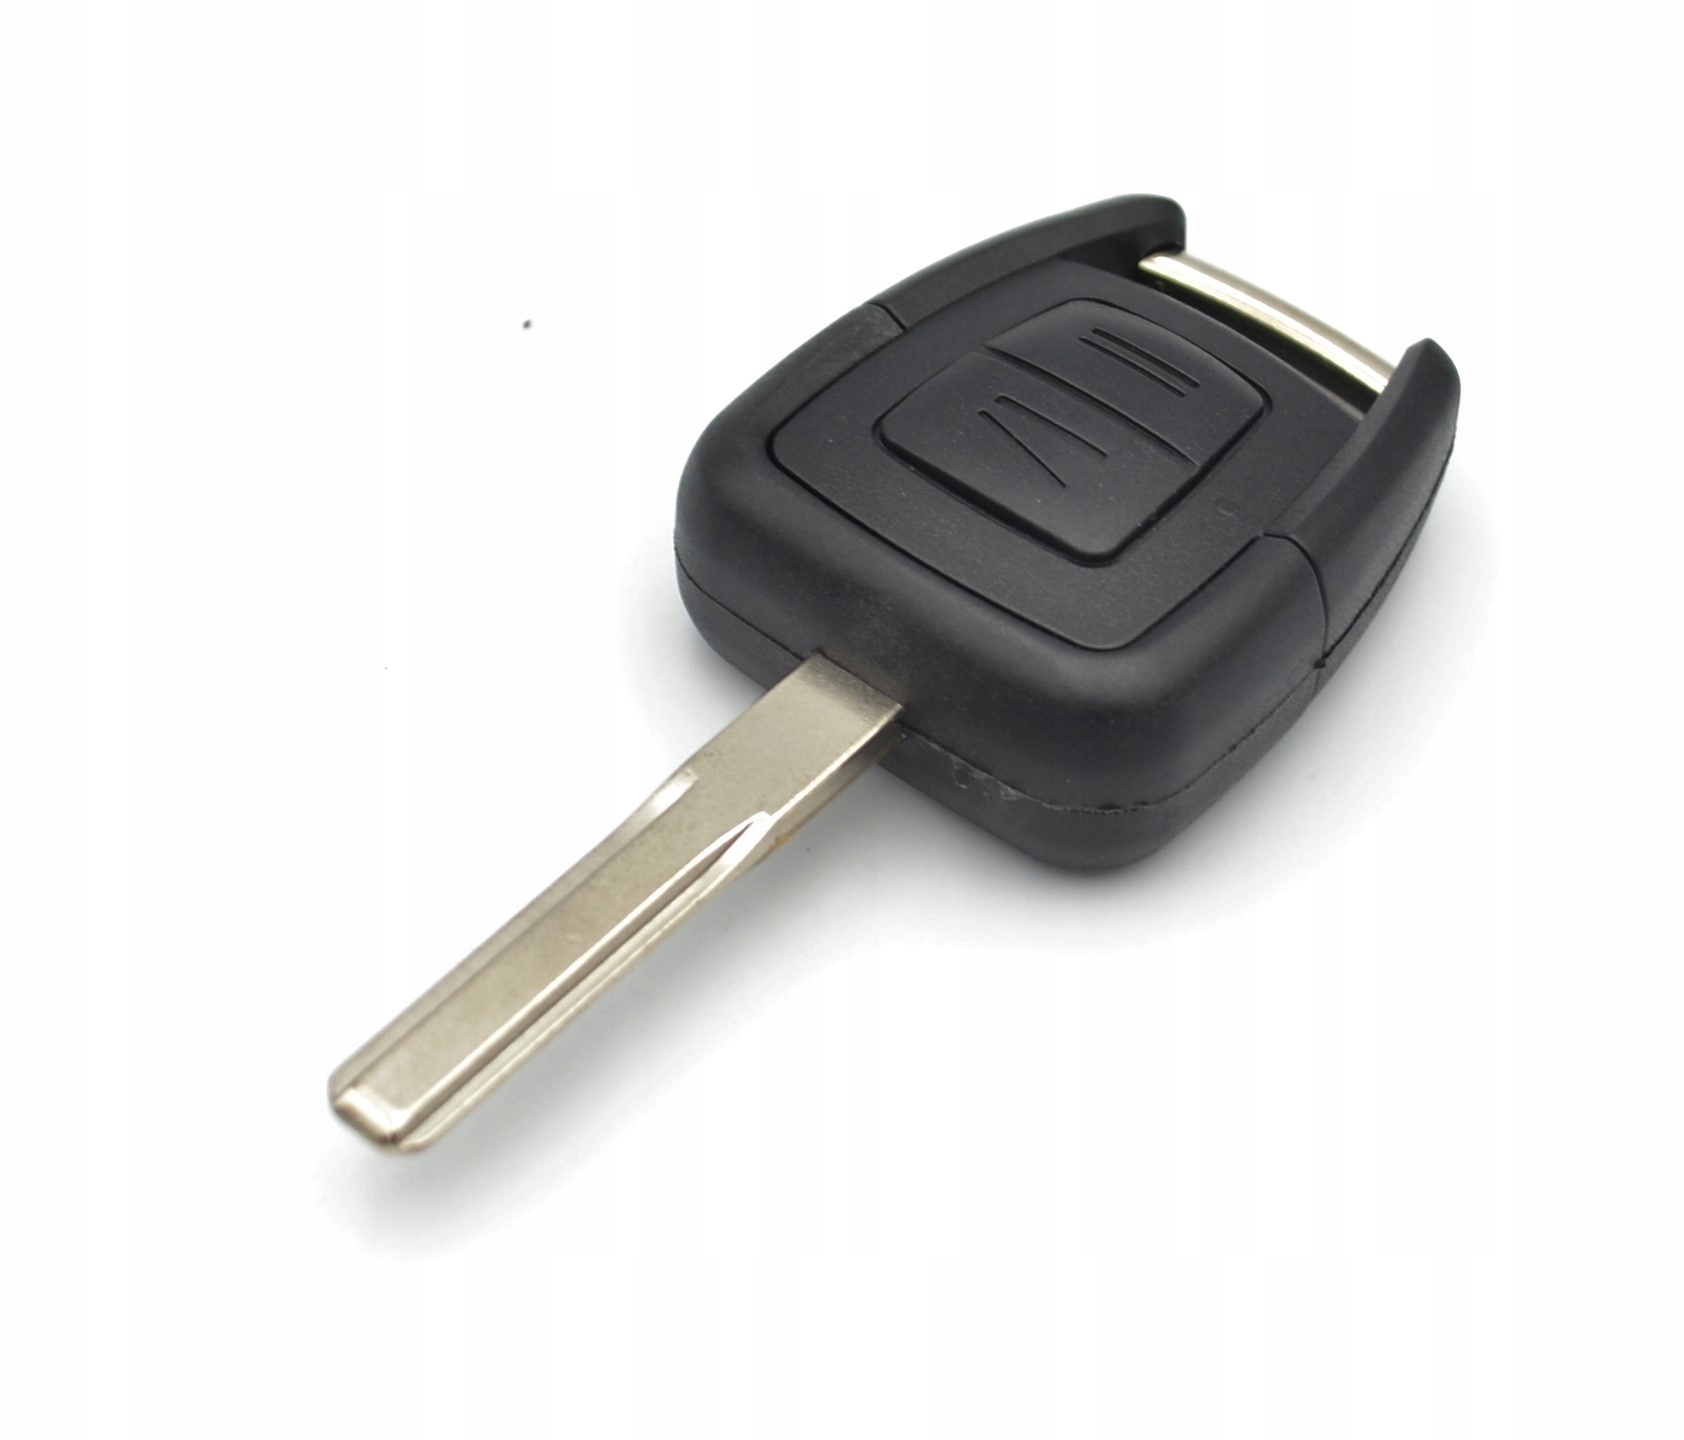 Ключ вектра б. Ключ Опель Вектра ц. Opel Vectra b ключ зажигания. Ключ зажигания Опель Вектра с. Ключ зажигания Опель Вектра б.